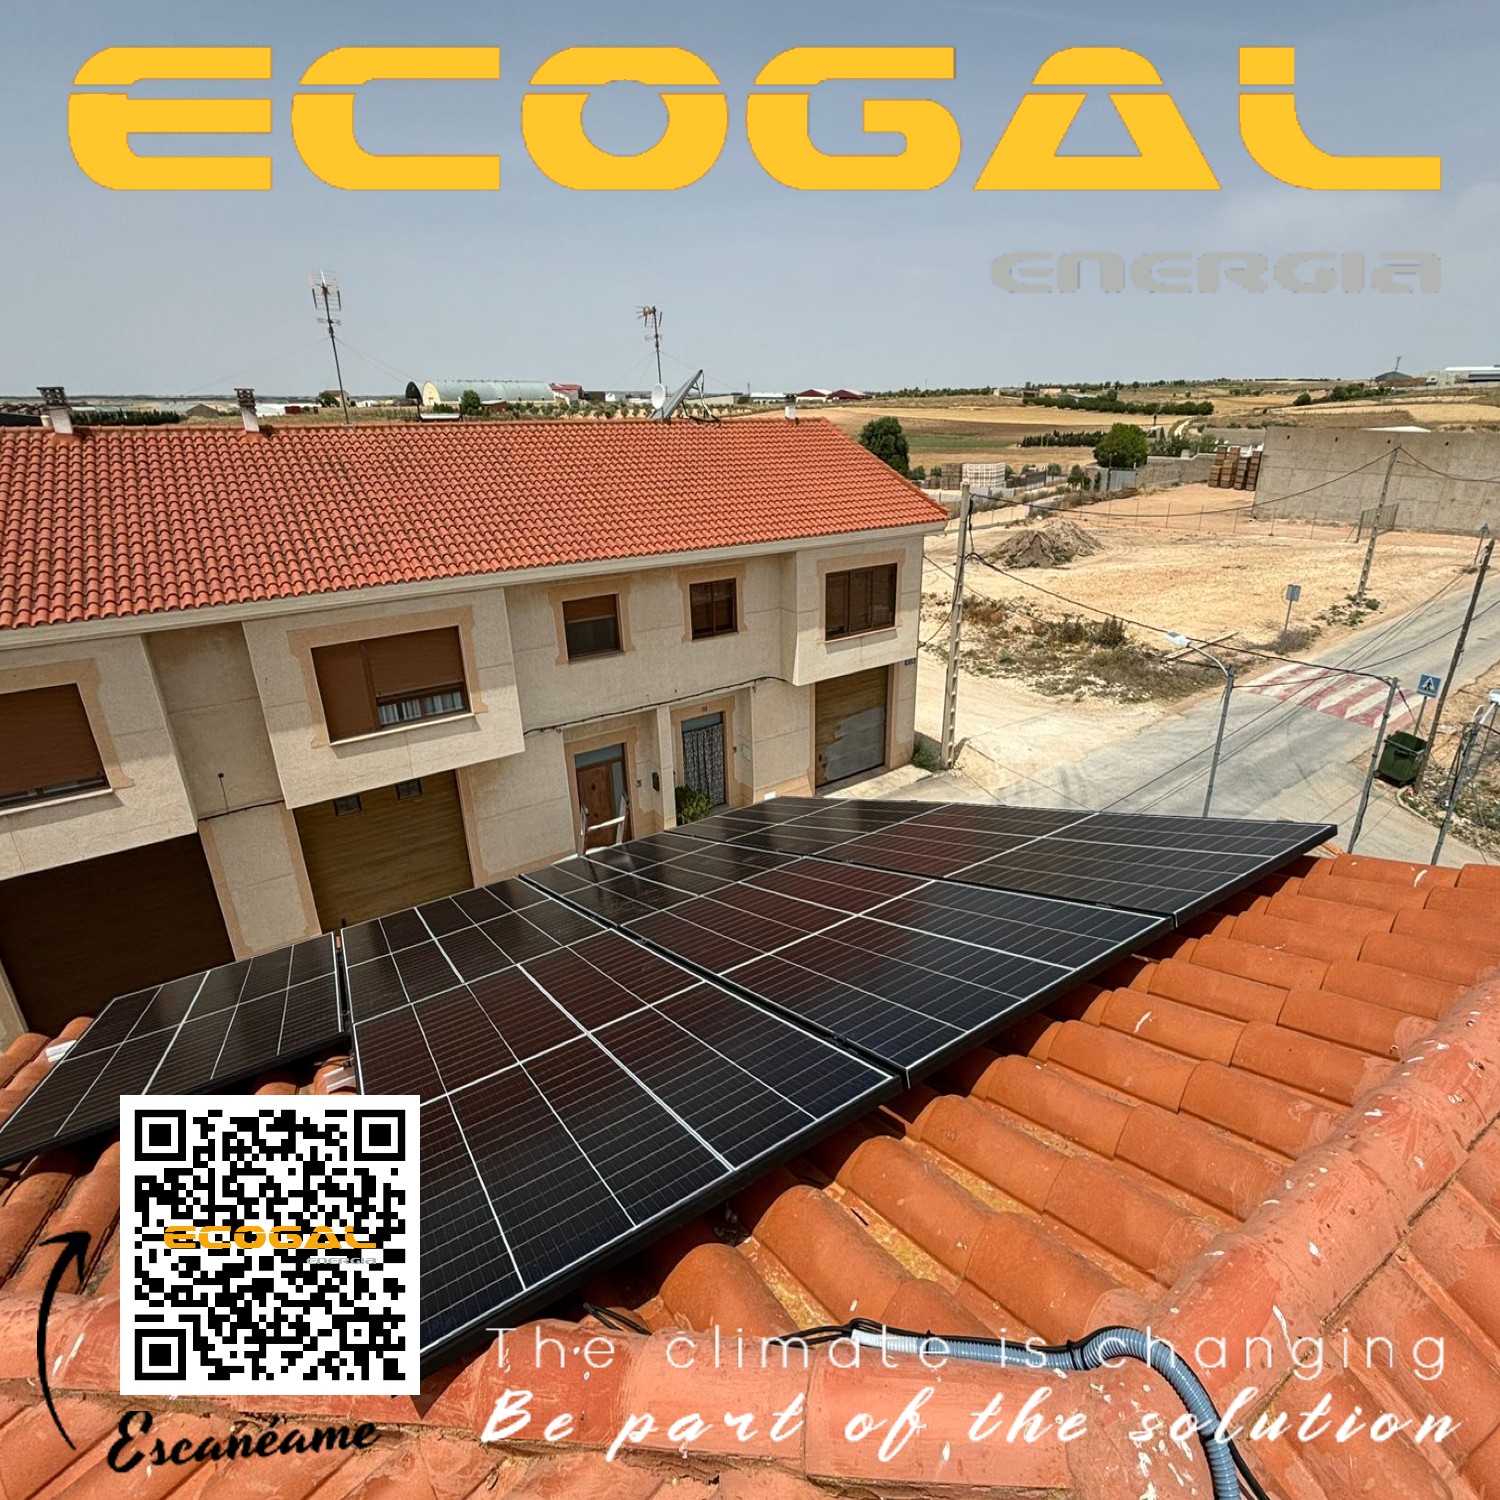 Autoconsumo solar en una vivienda de Las Pedroñeras (Cuenca) de 6 kWp